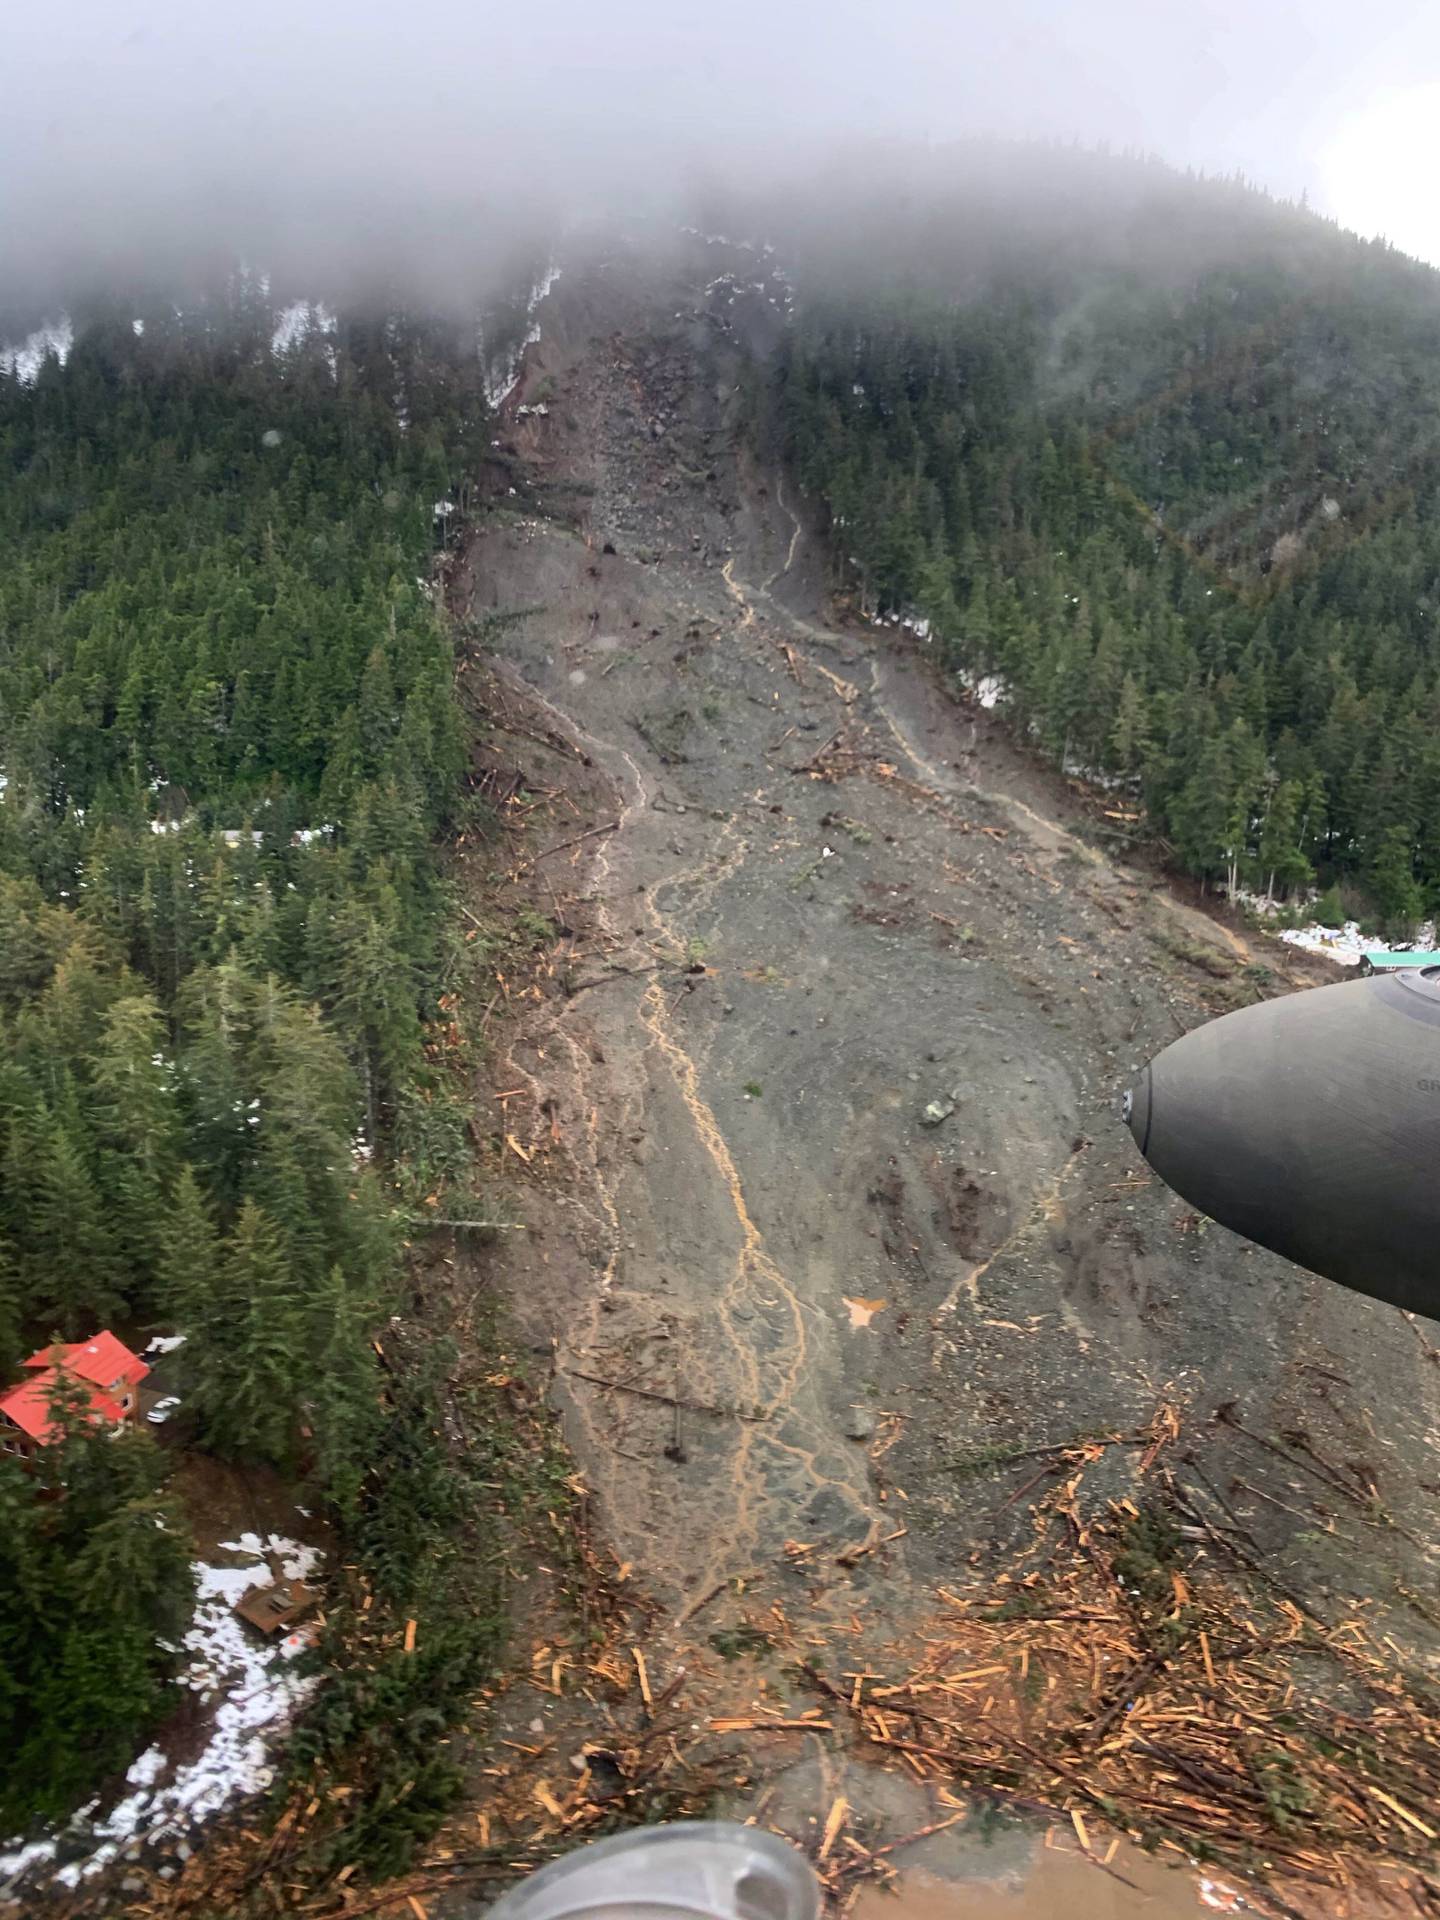 Haines landslide